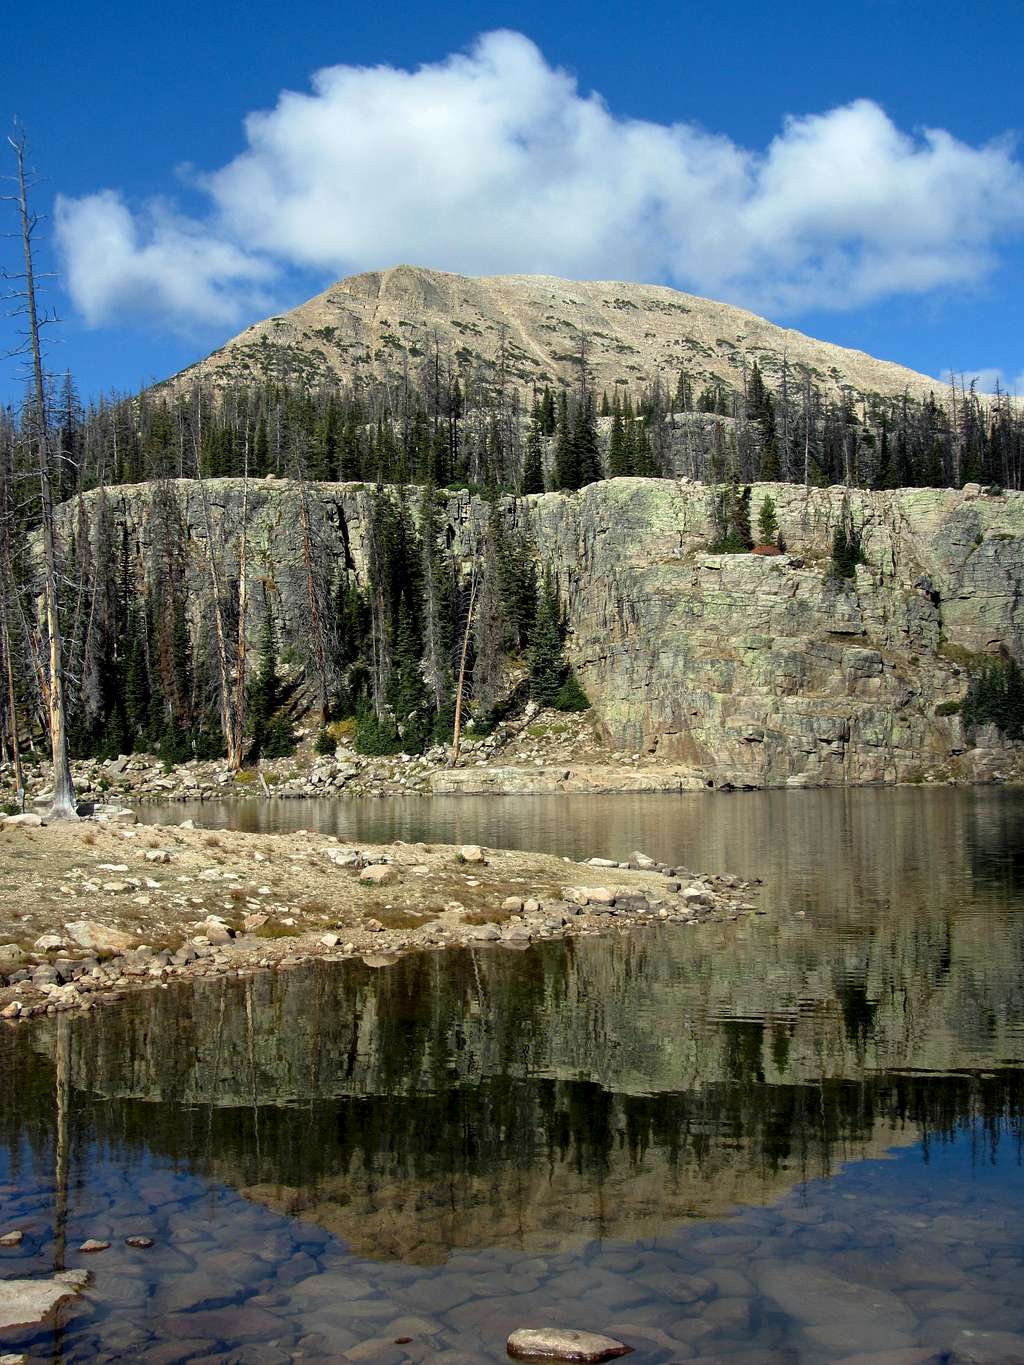 Mount Watson Wall Lake reflection